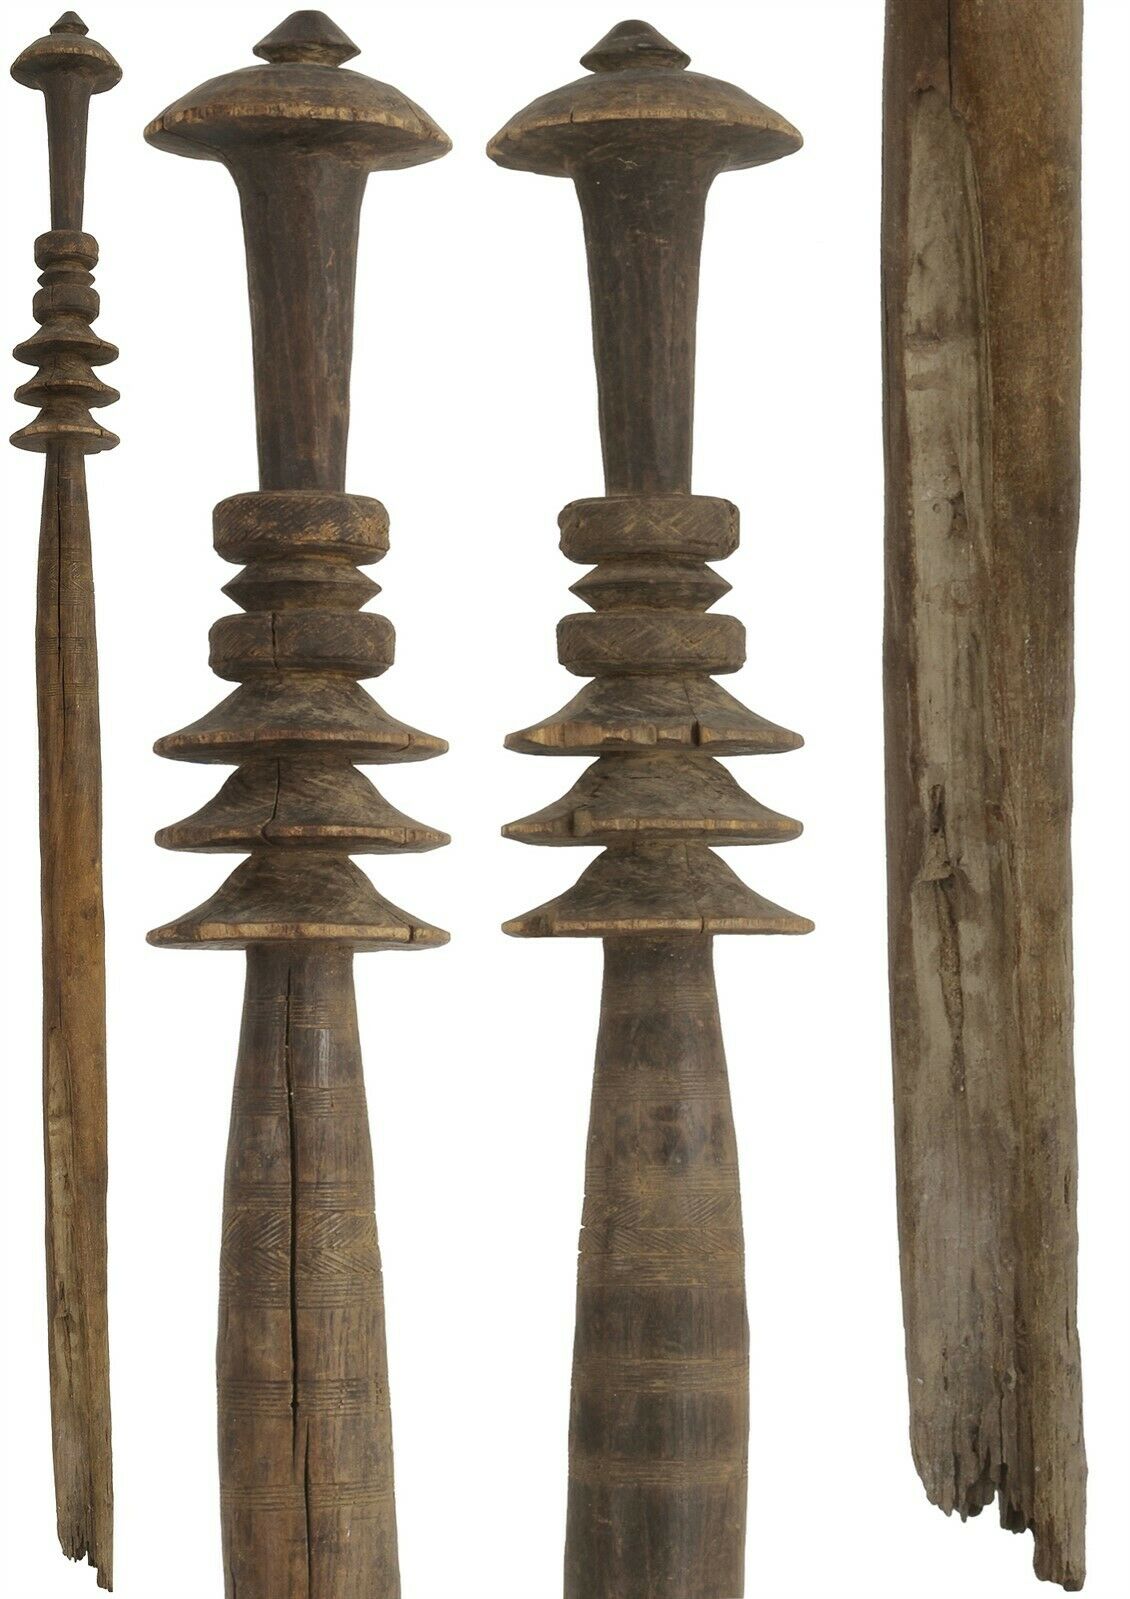 Τουαρέγκ αυθεντικό παλιό στύλο σκηνής ξύλινο Αφρικανική Σαχάρα Νομάδα Νίγηρα Μάλι - Tribalgh